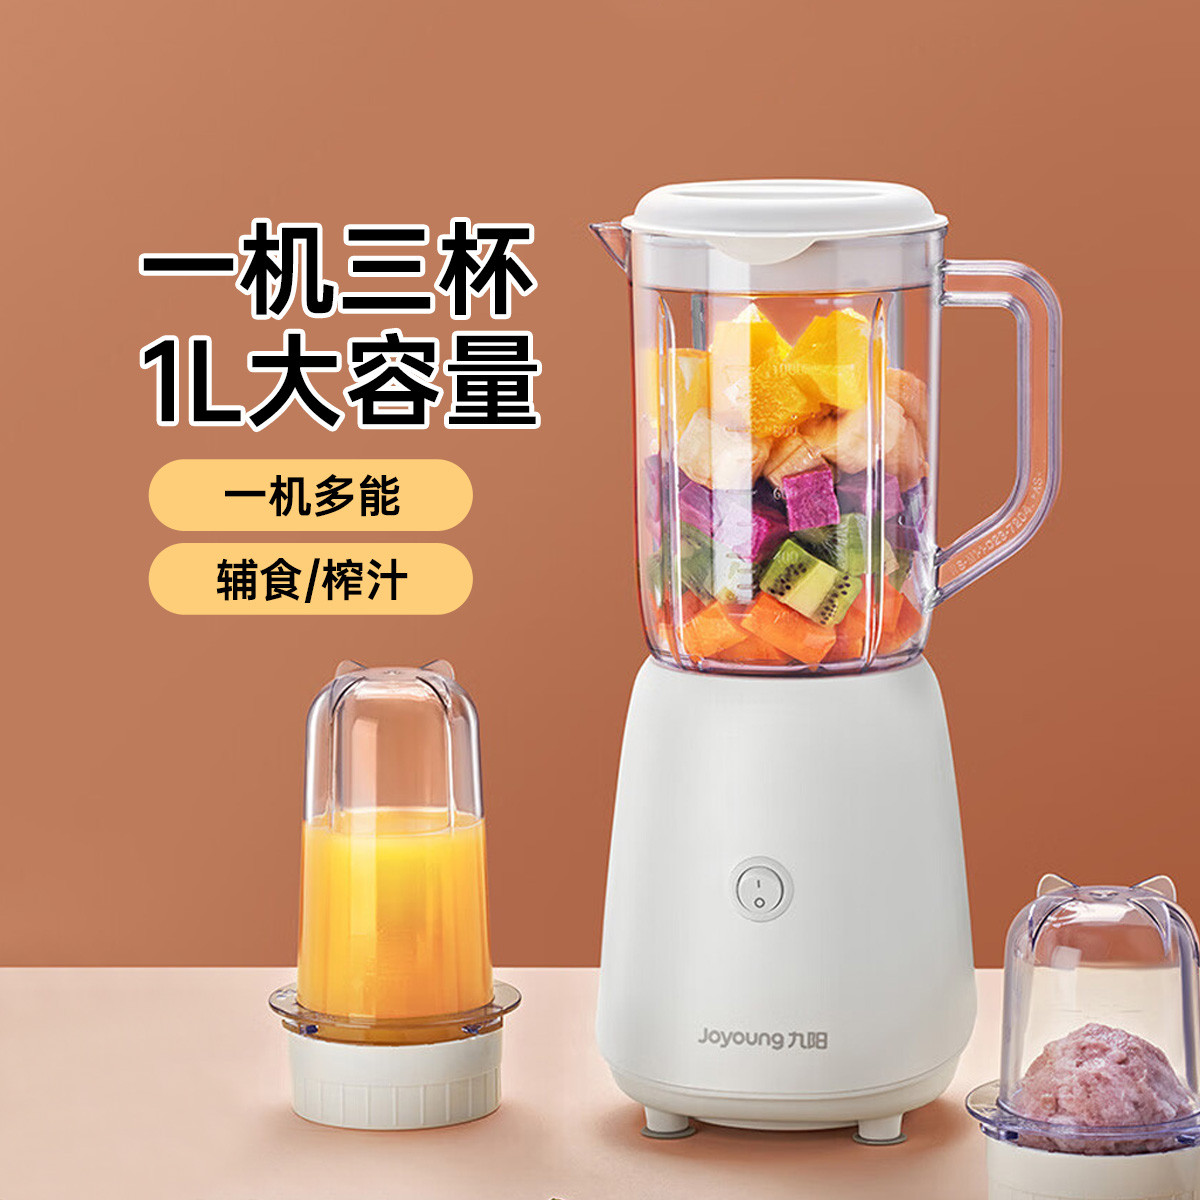 Joyoung 九阳 料理机家用多功能榨汁机搅拌机婴儿辅食机果汁杯L191